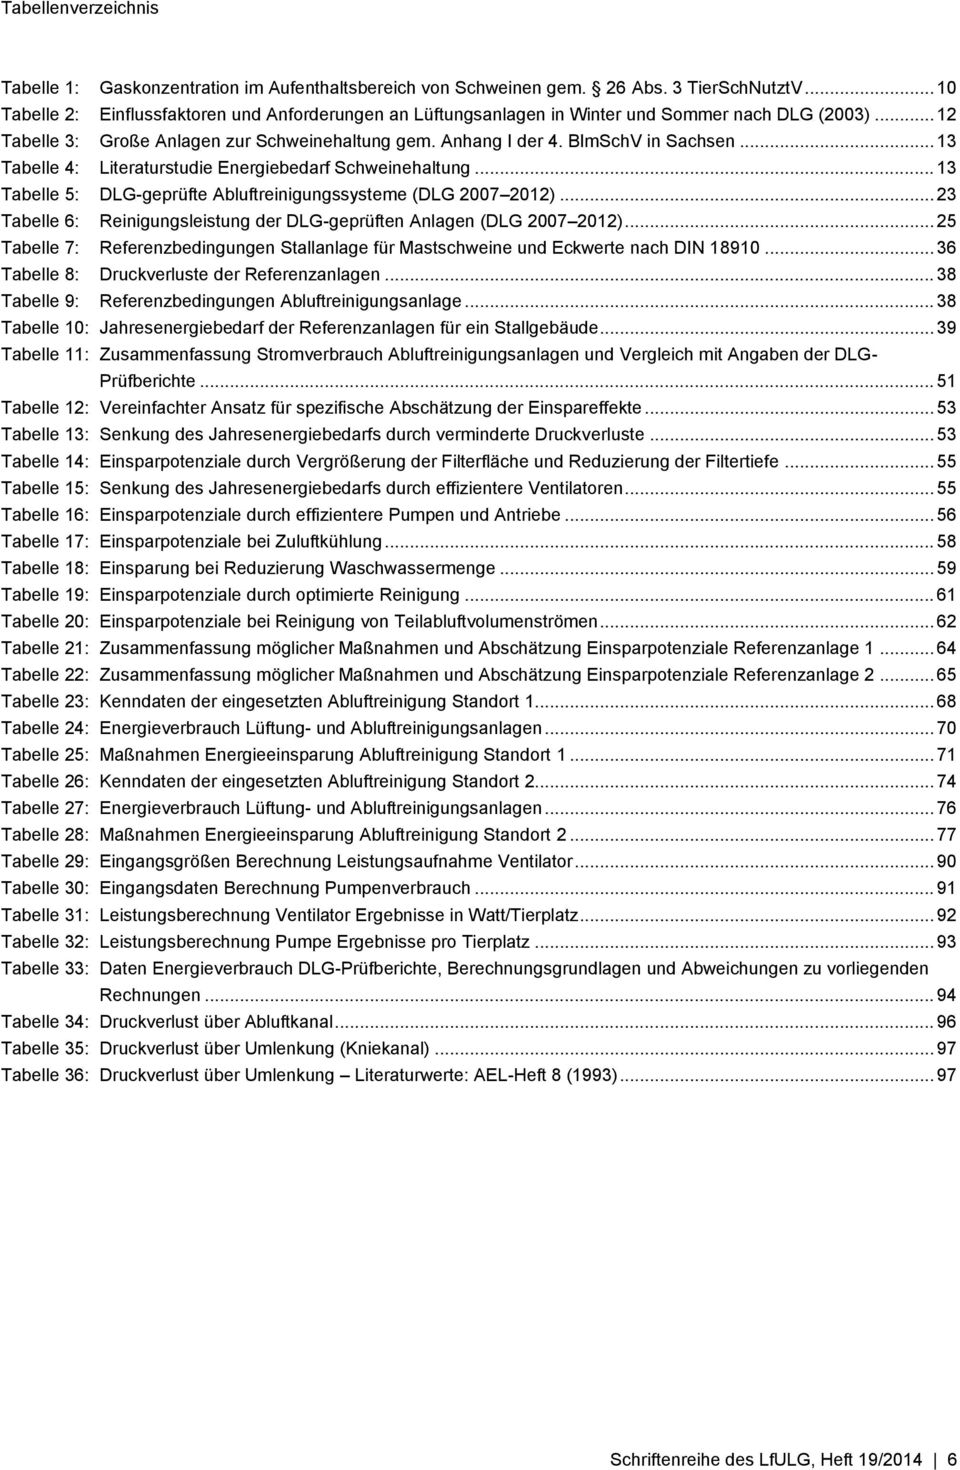 .. 13 Tabelle 4: Literaturstudie Energiebedarf Schweinehaltung... 13 Tabelle 5: DLG-geprüfte Abluftreinigungssysteme (DLG 2007 2012).